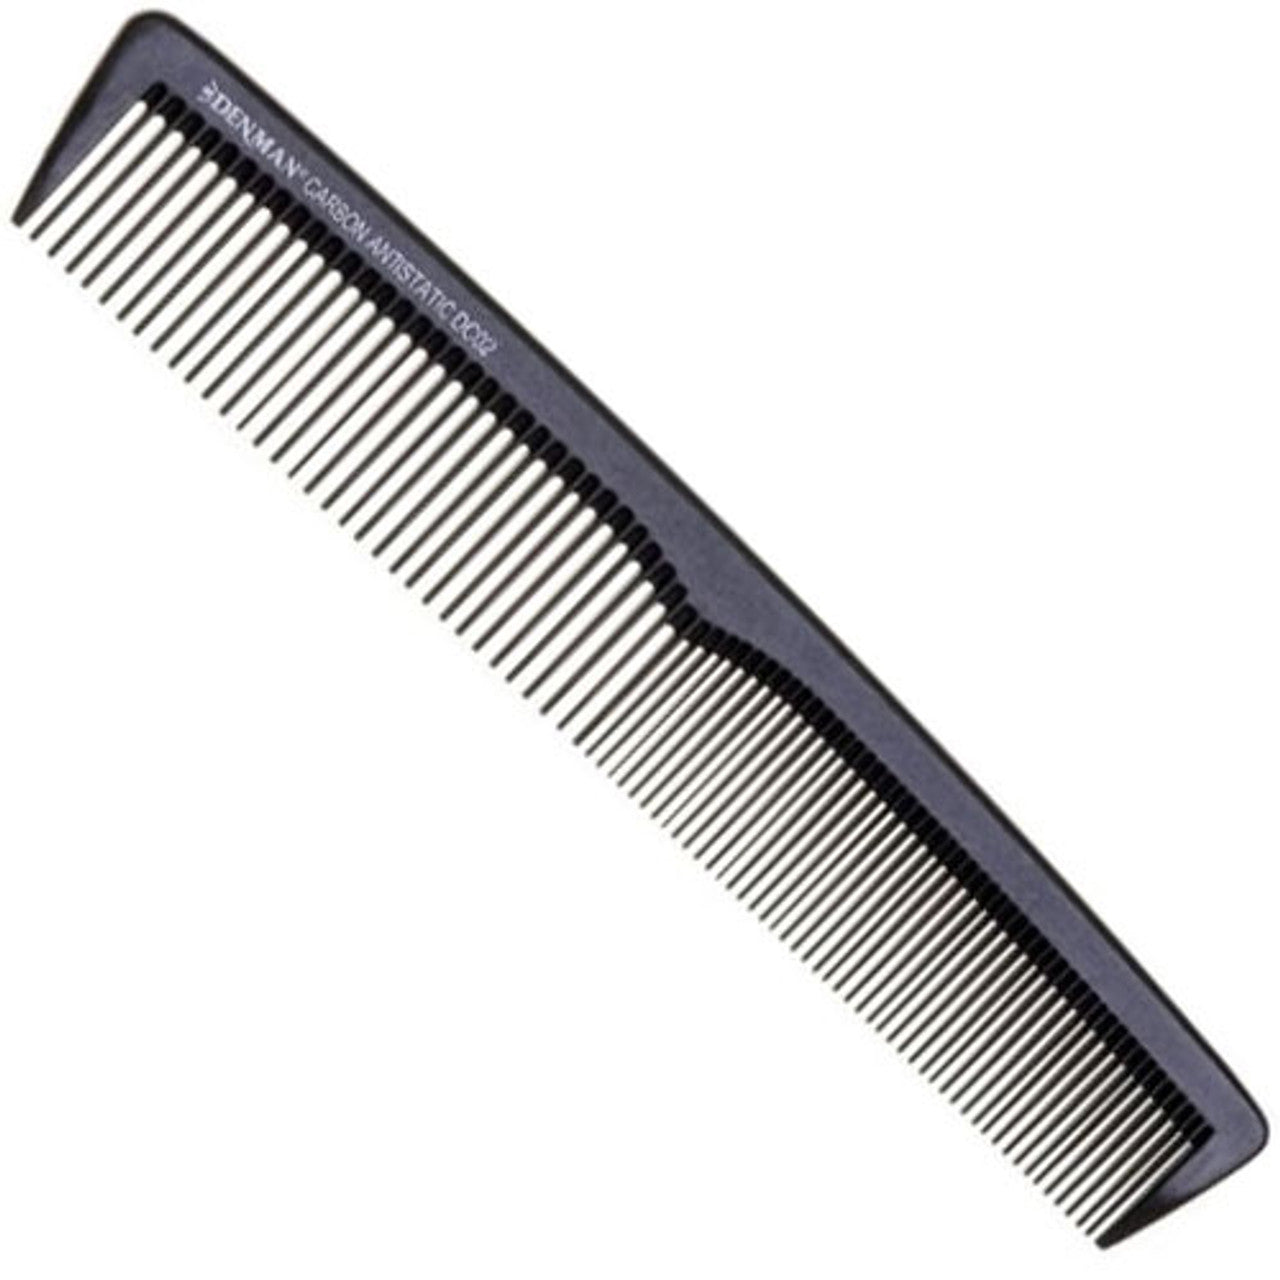 專業碳纖維抗靜電理髮梳 DC02 (180mm)